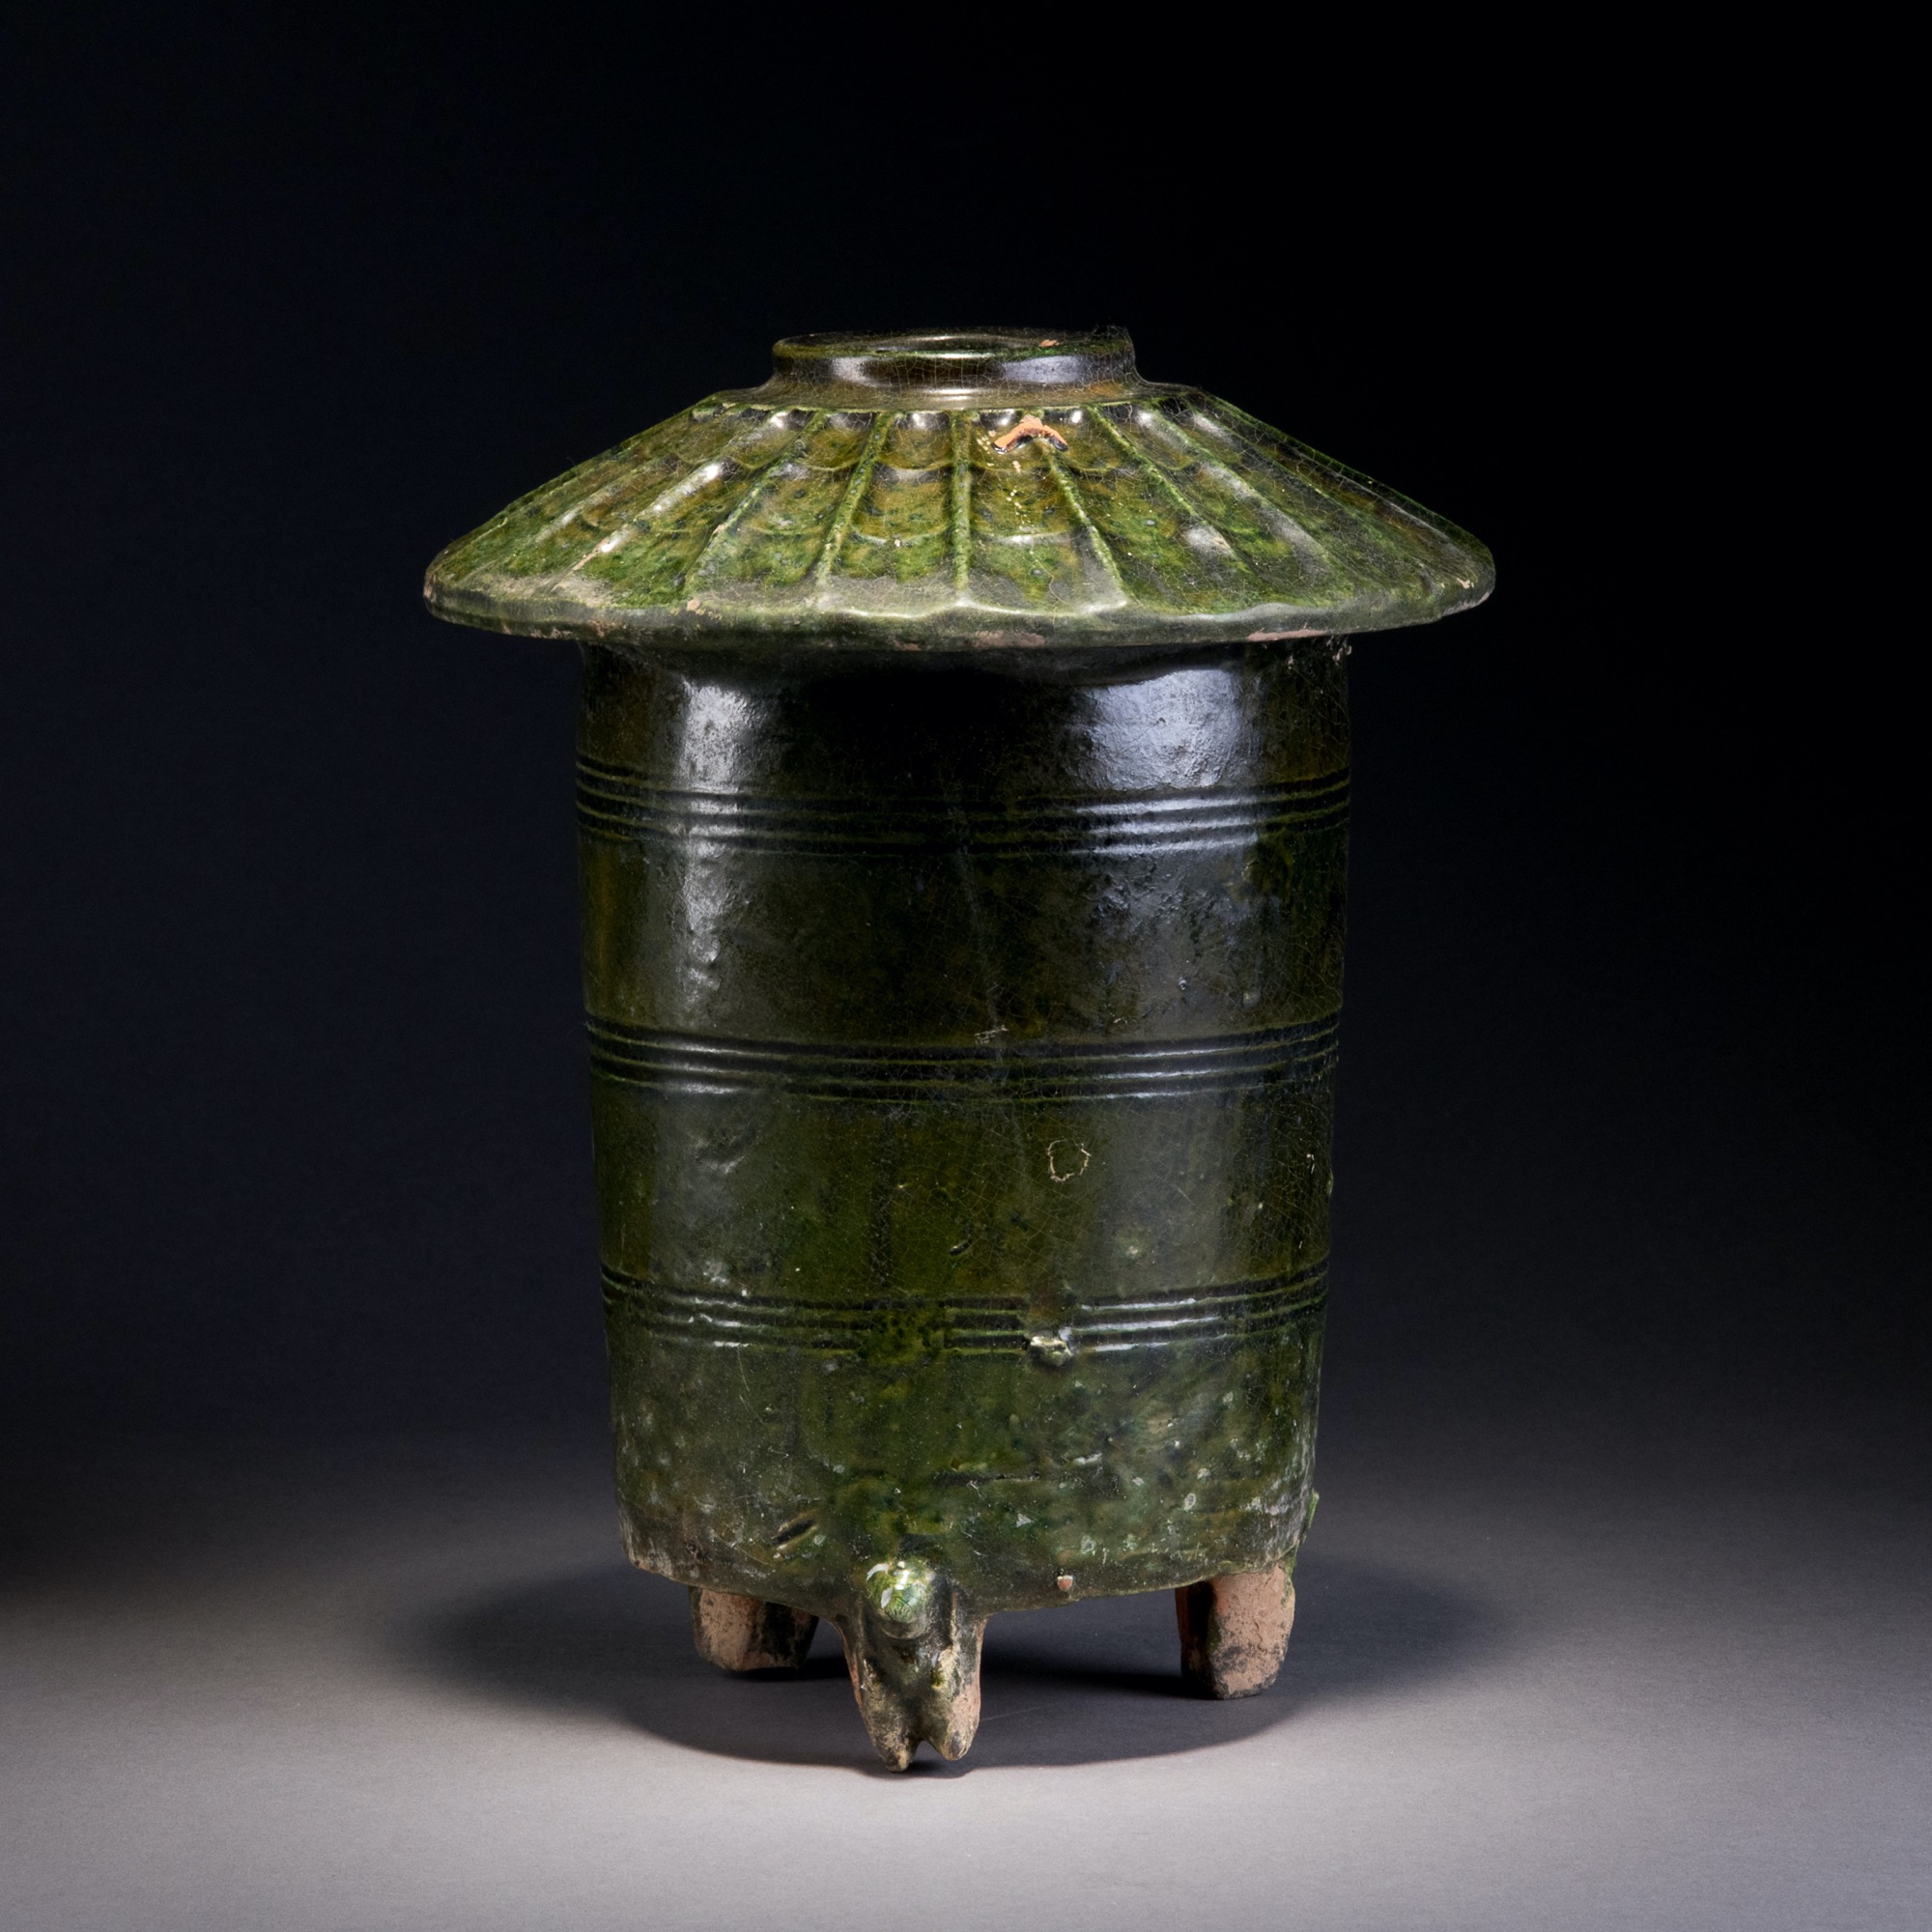 汉代真品釉陶罐价值图片